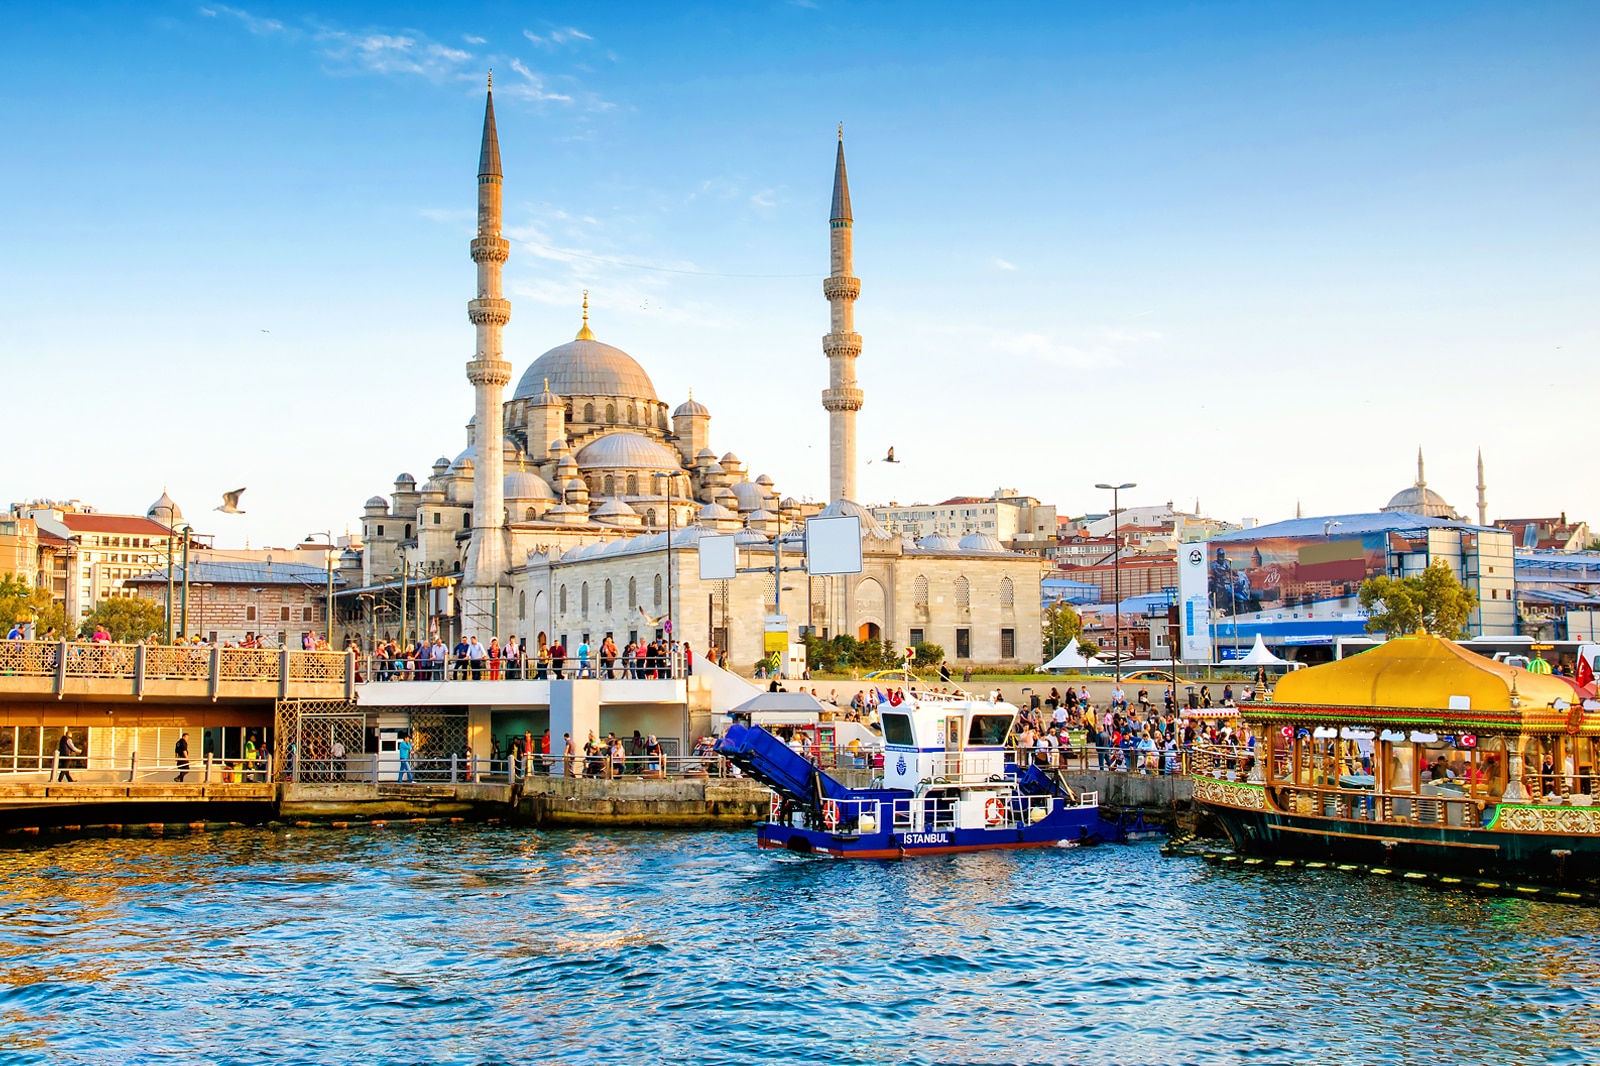 Objavte čaro Istanbulu: Okrem zúrivého nakupovanie, prepadnite aj miestnej histórii a gastronómii!